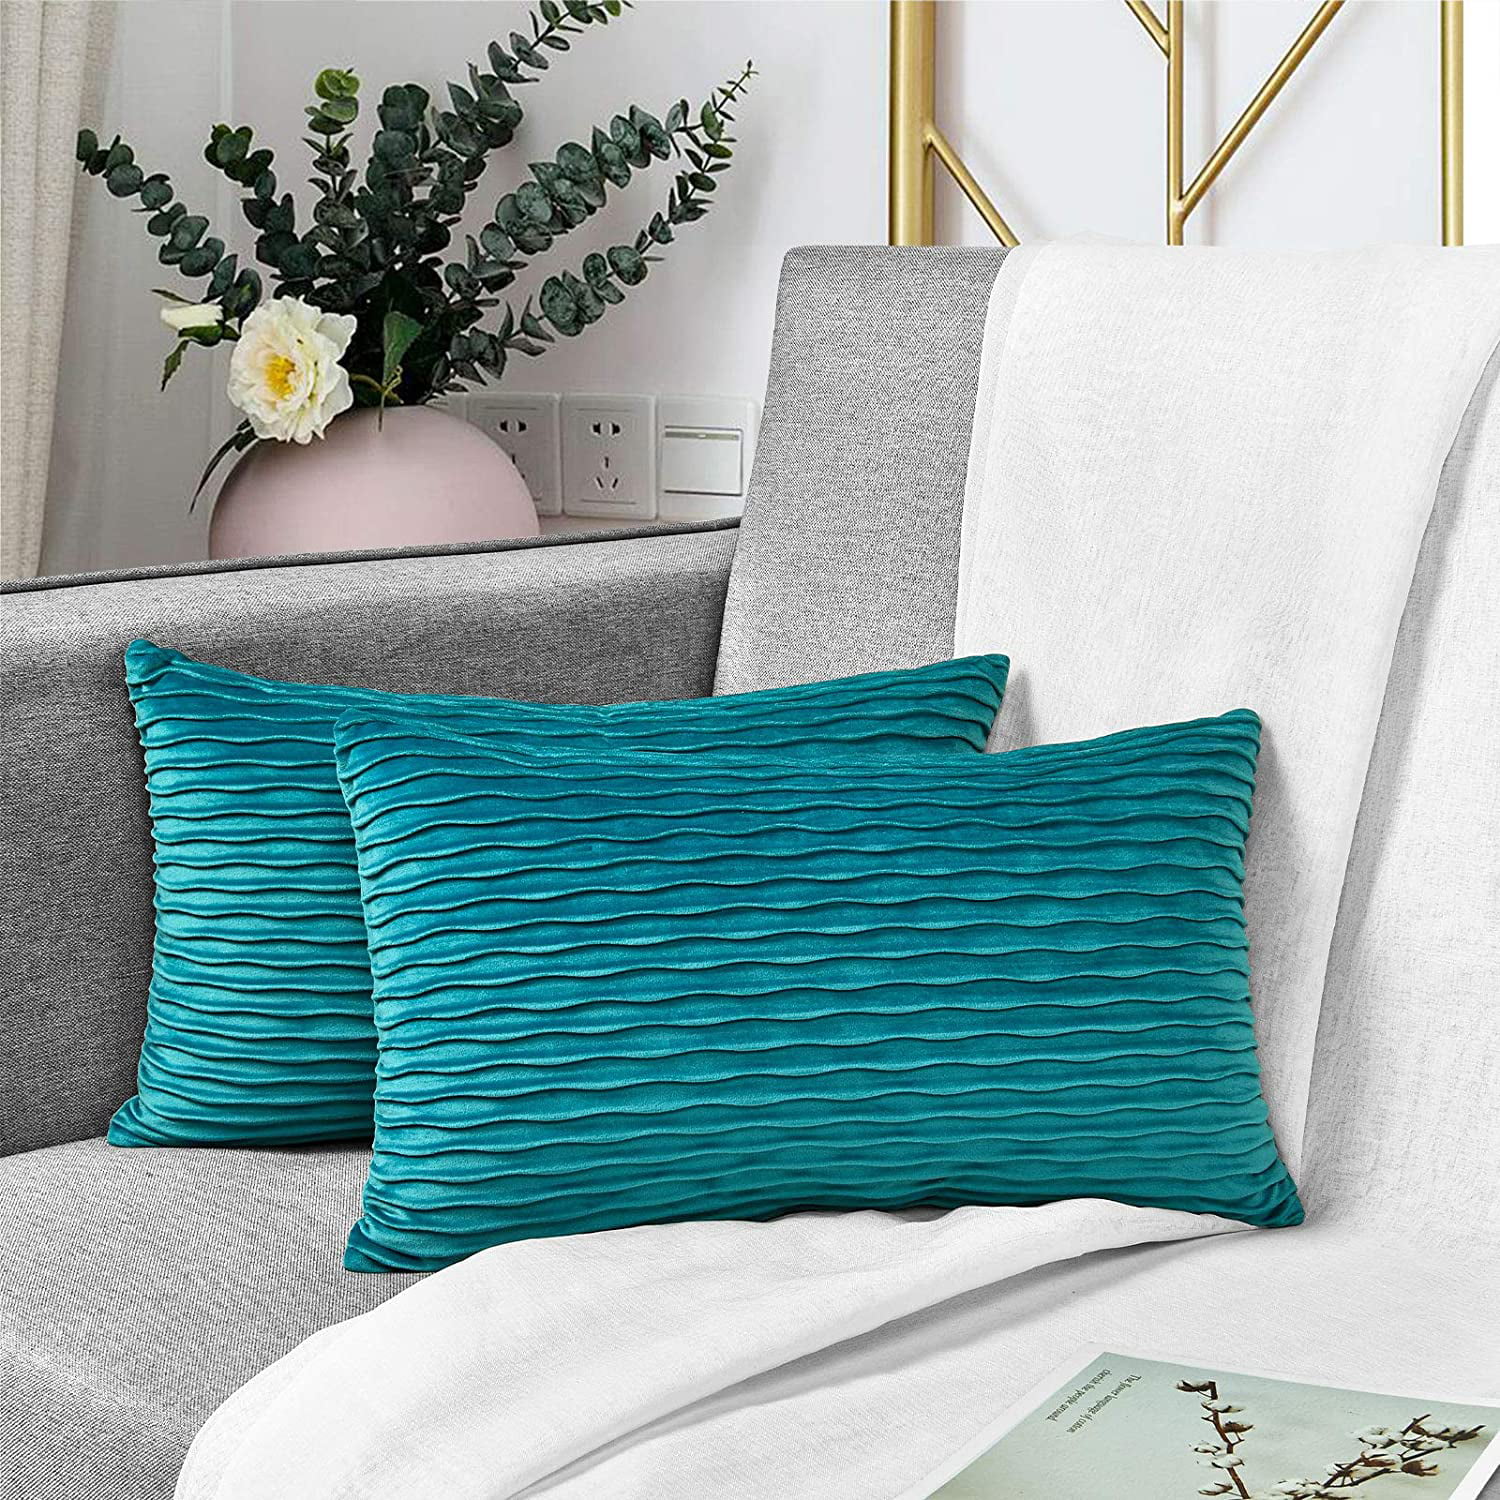 Modern Green Throw Waist Pillows Case Cushion Cover Sofa Bed Home Decor 18"x 18"